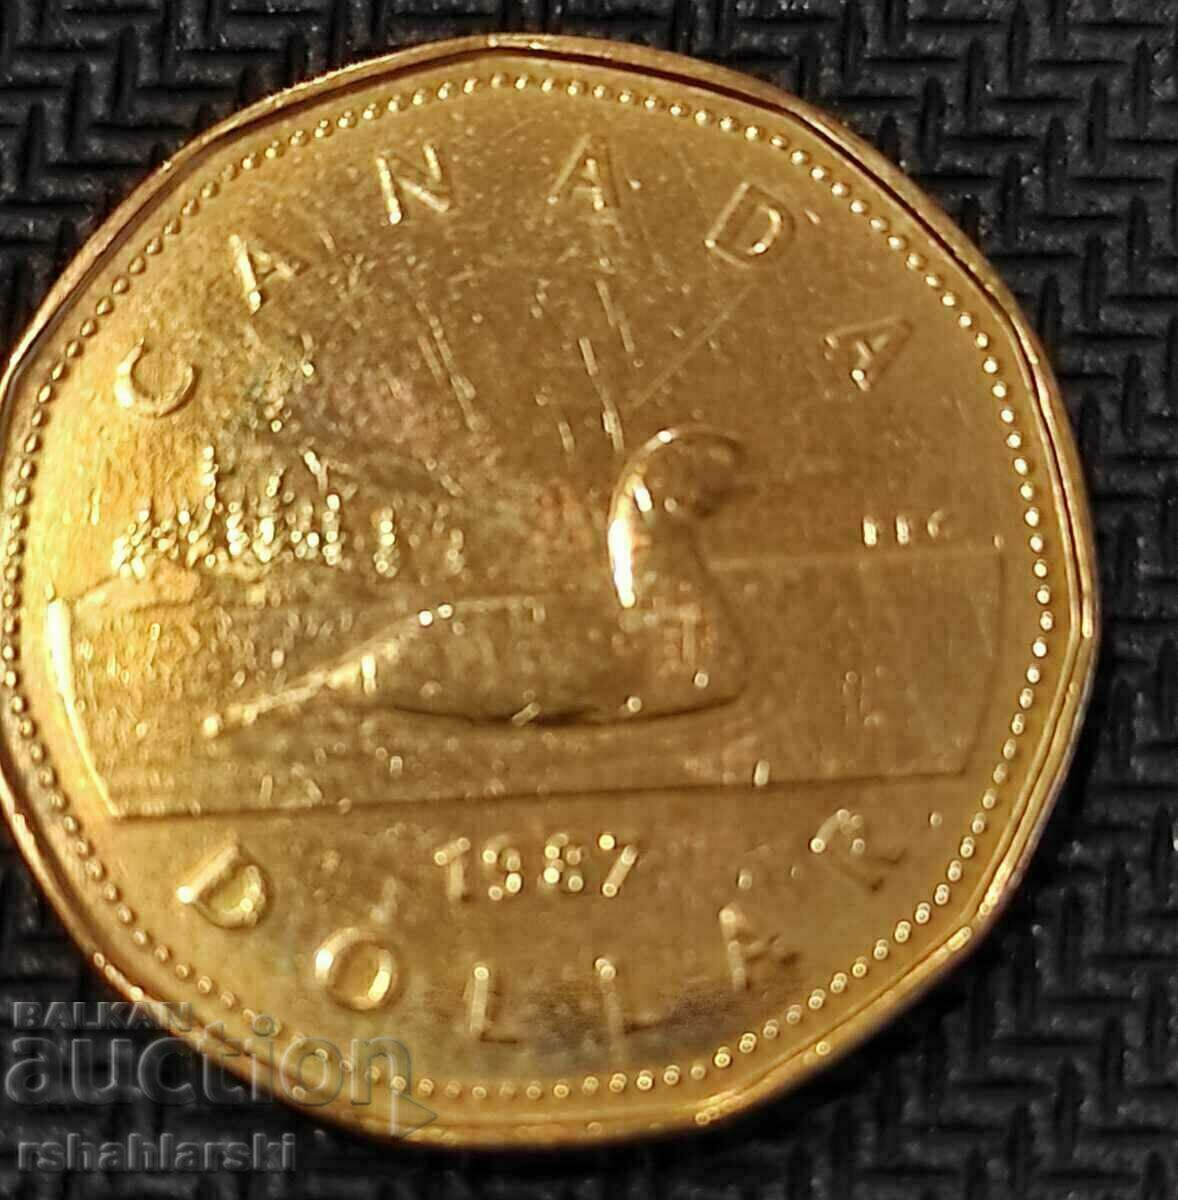 Canada $1, 1987